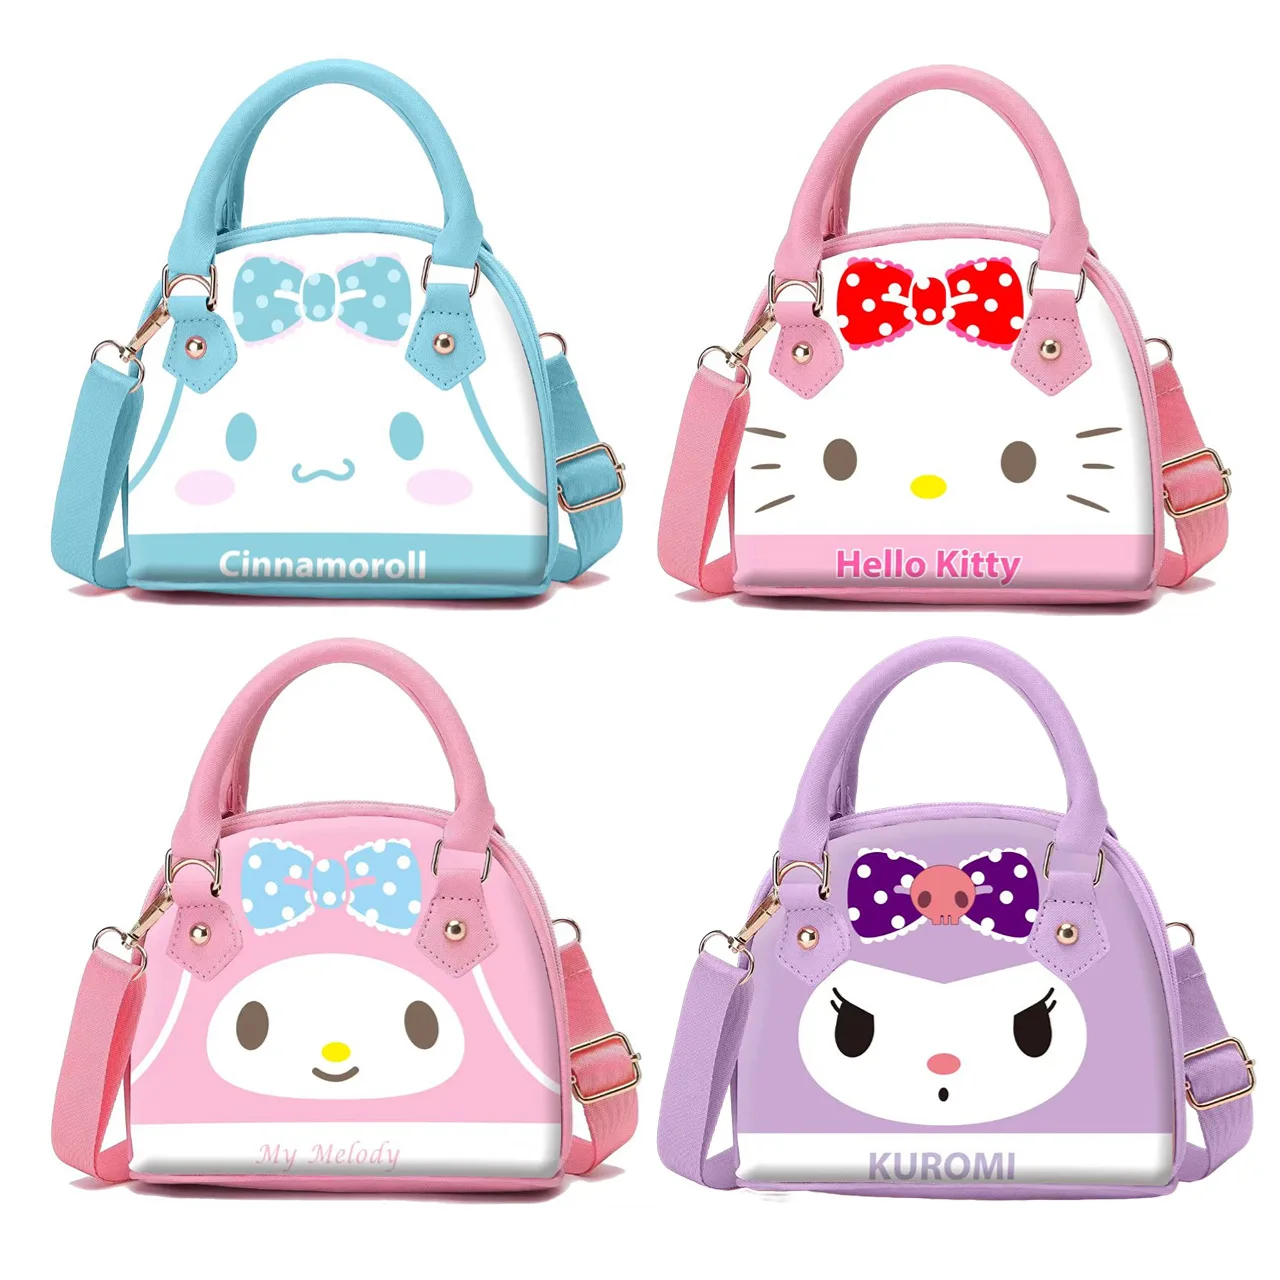 Новая мультяшная сумка Hello Kitty My Melody Cinnamorroll Kuromi, Детская сумка-мессенджер, сумка через плечо, сумочка, кошелек, подарок на день рождения